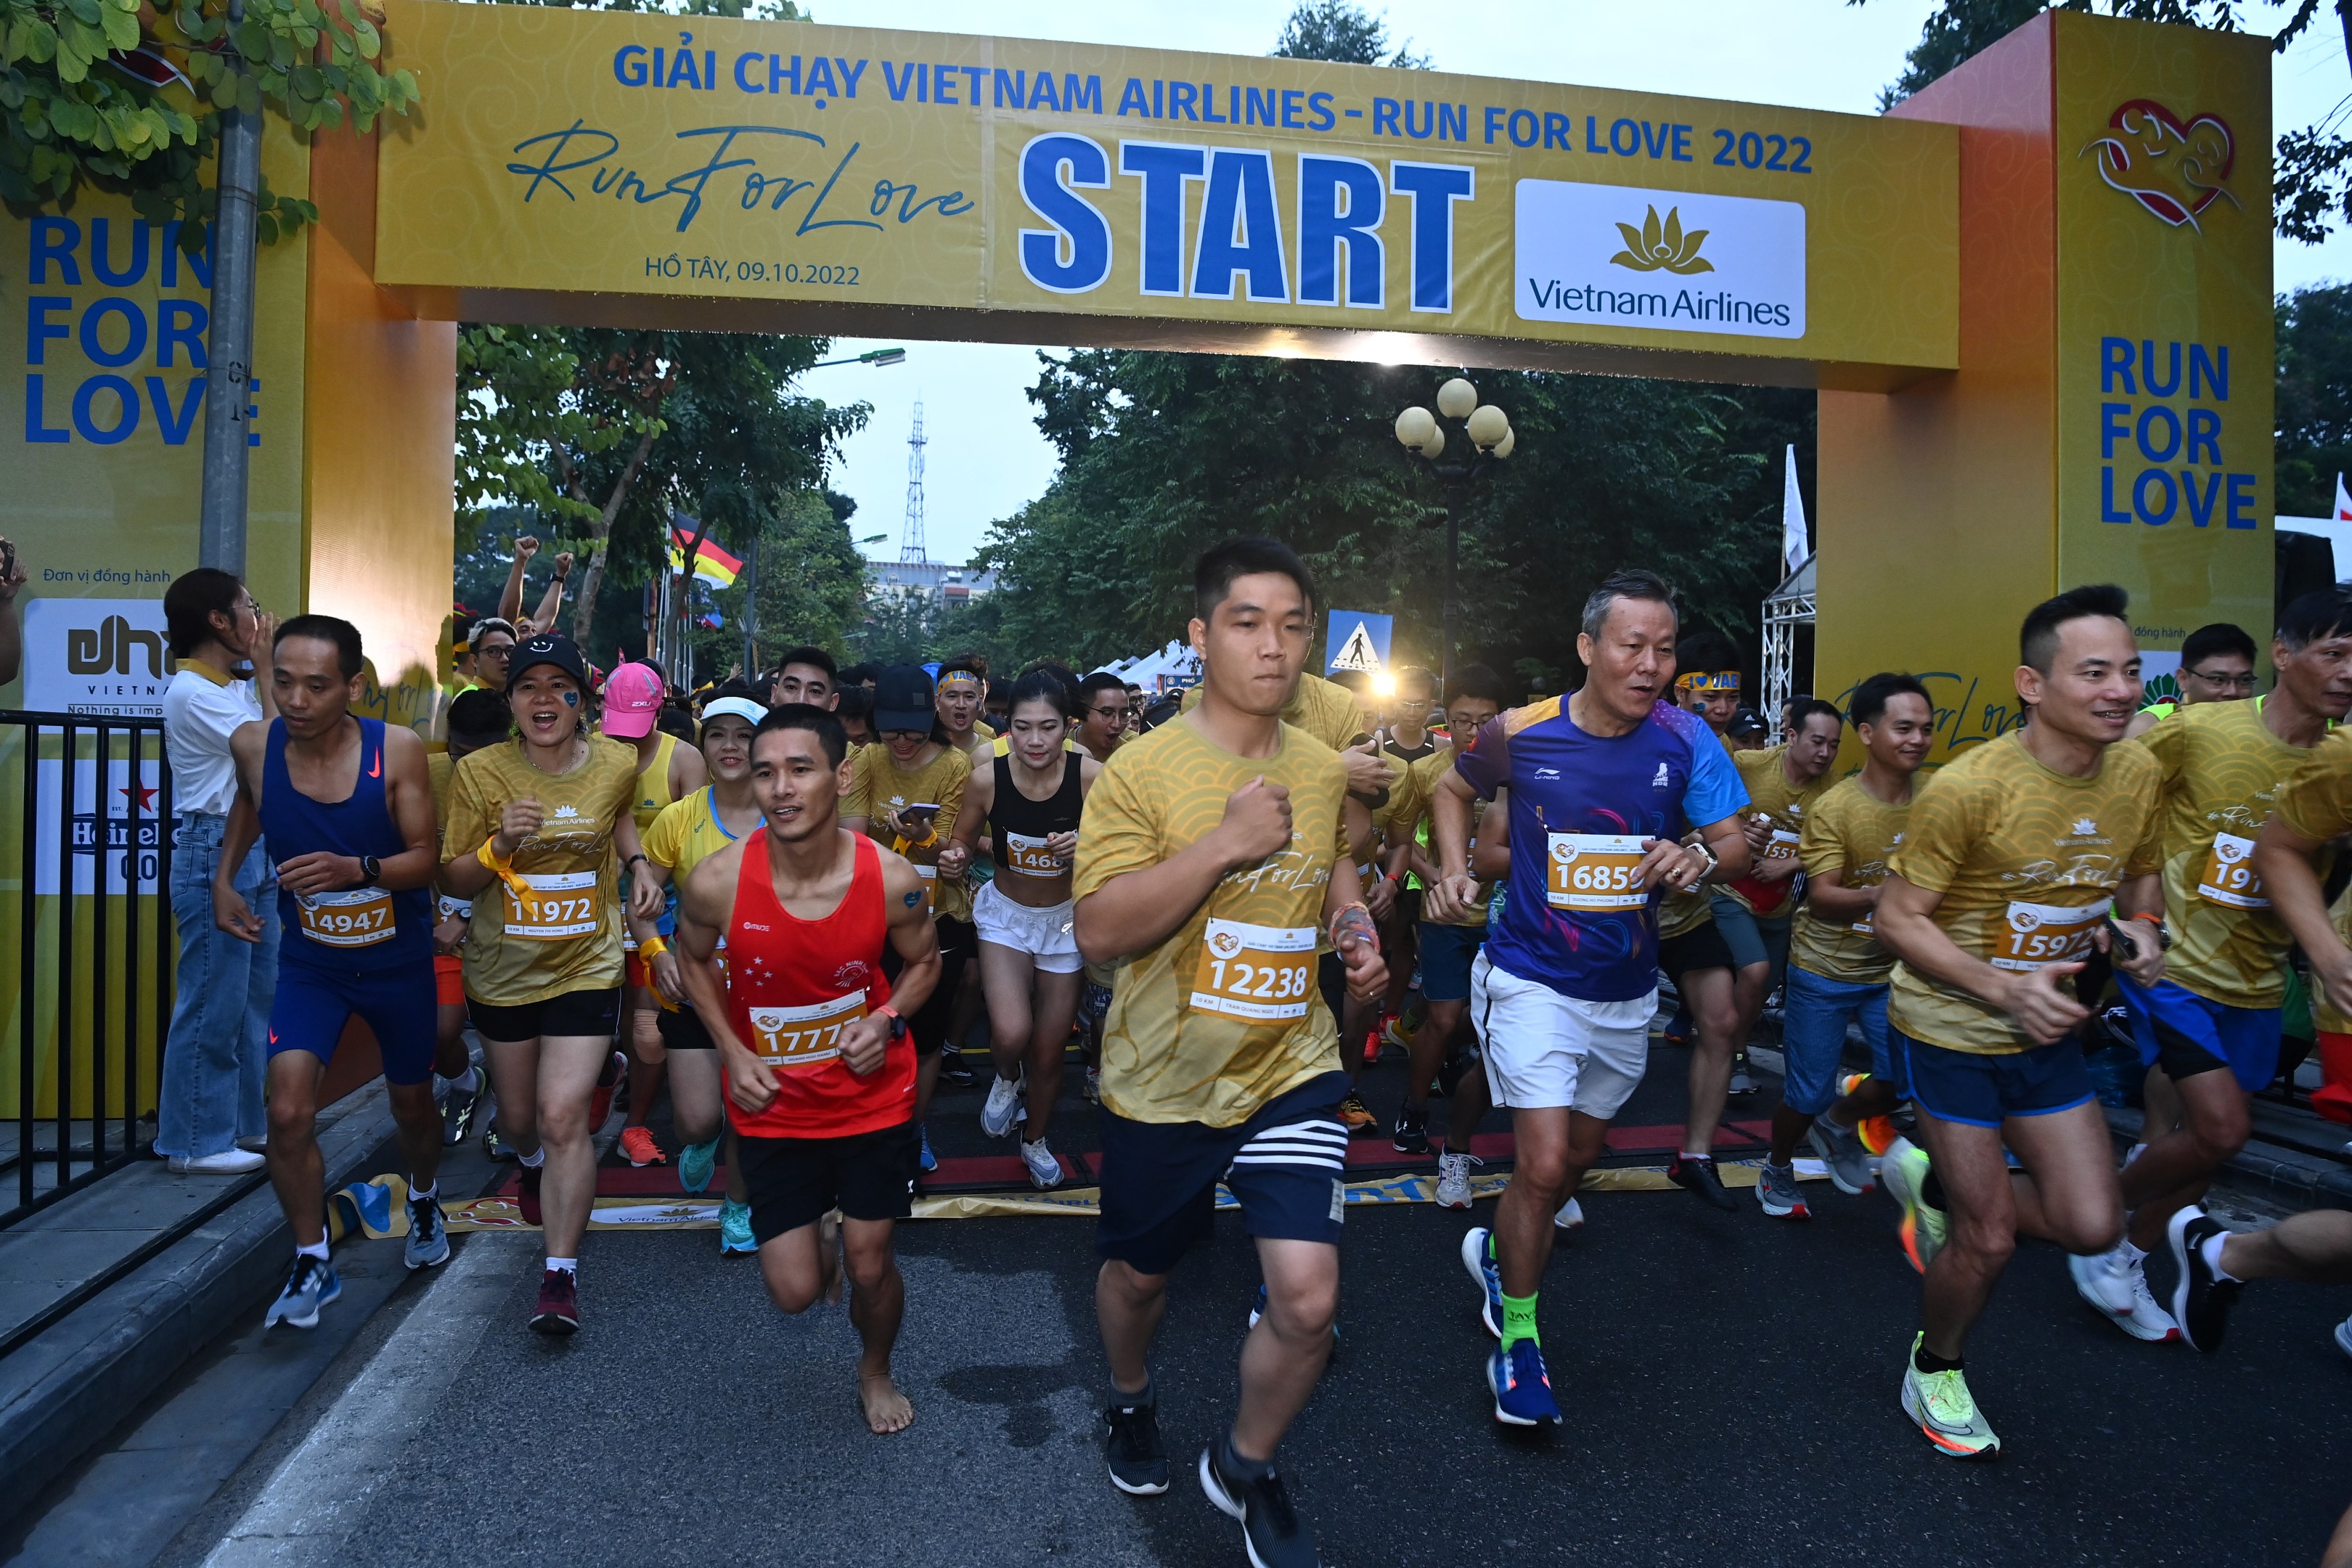 Giải chạy mang tên Vietnam Airlines - Run for Love, với 02 cự ly 5km và 10km